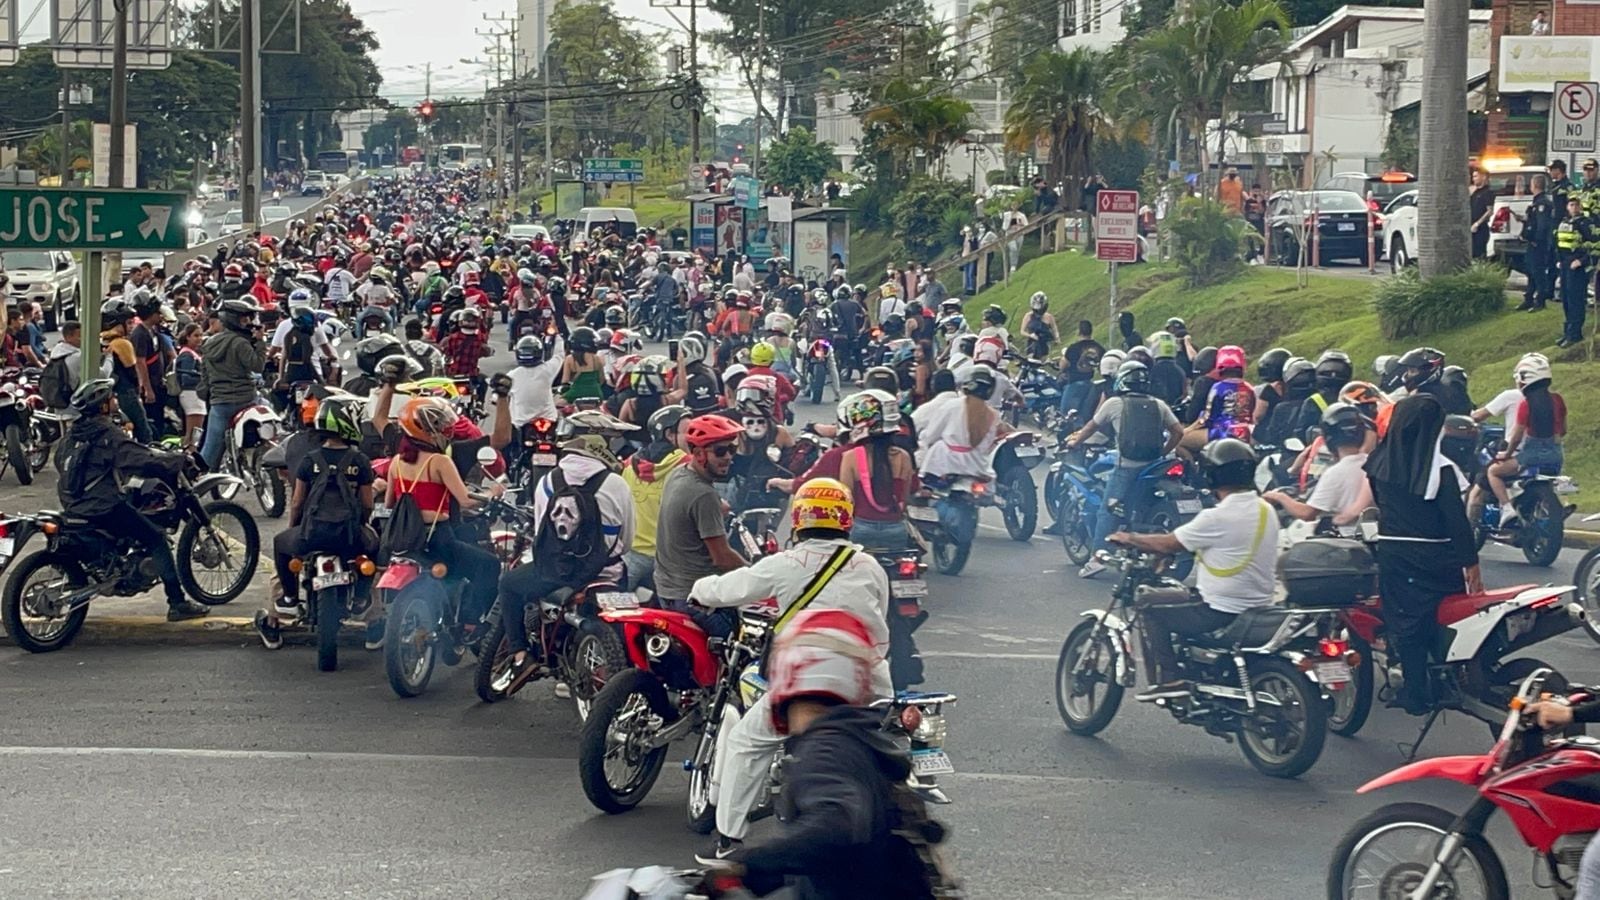 Vista de parte de los miles de motociclistas que este domingo colapsaron el tránsito al este de San José. Fotografía: Alonso Tenorio